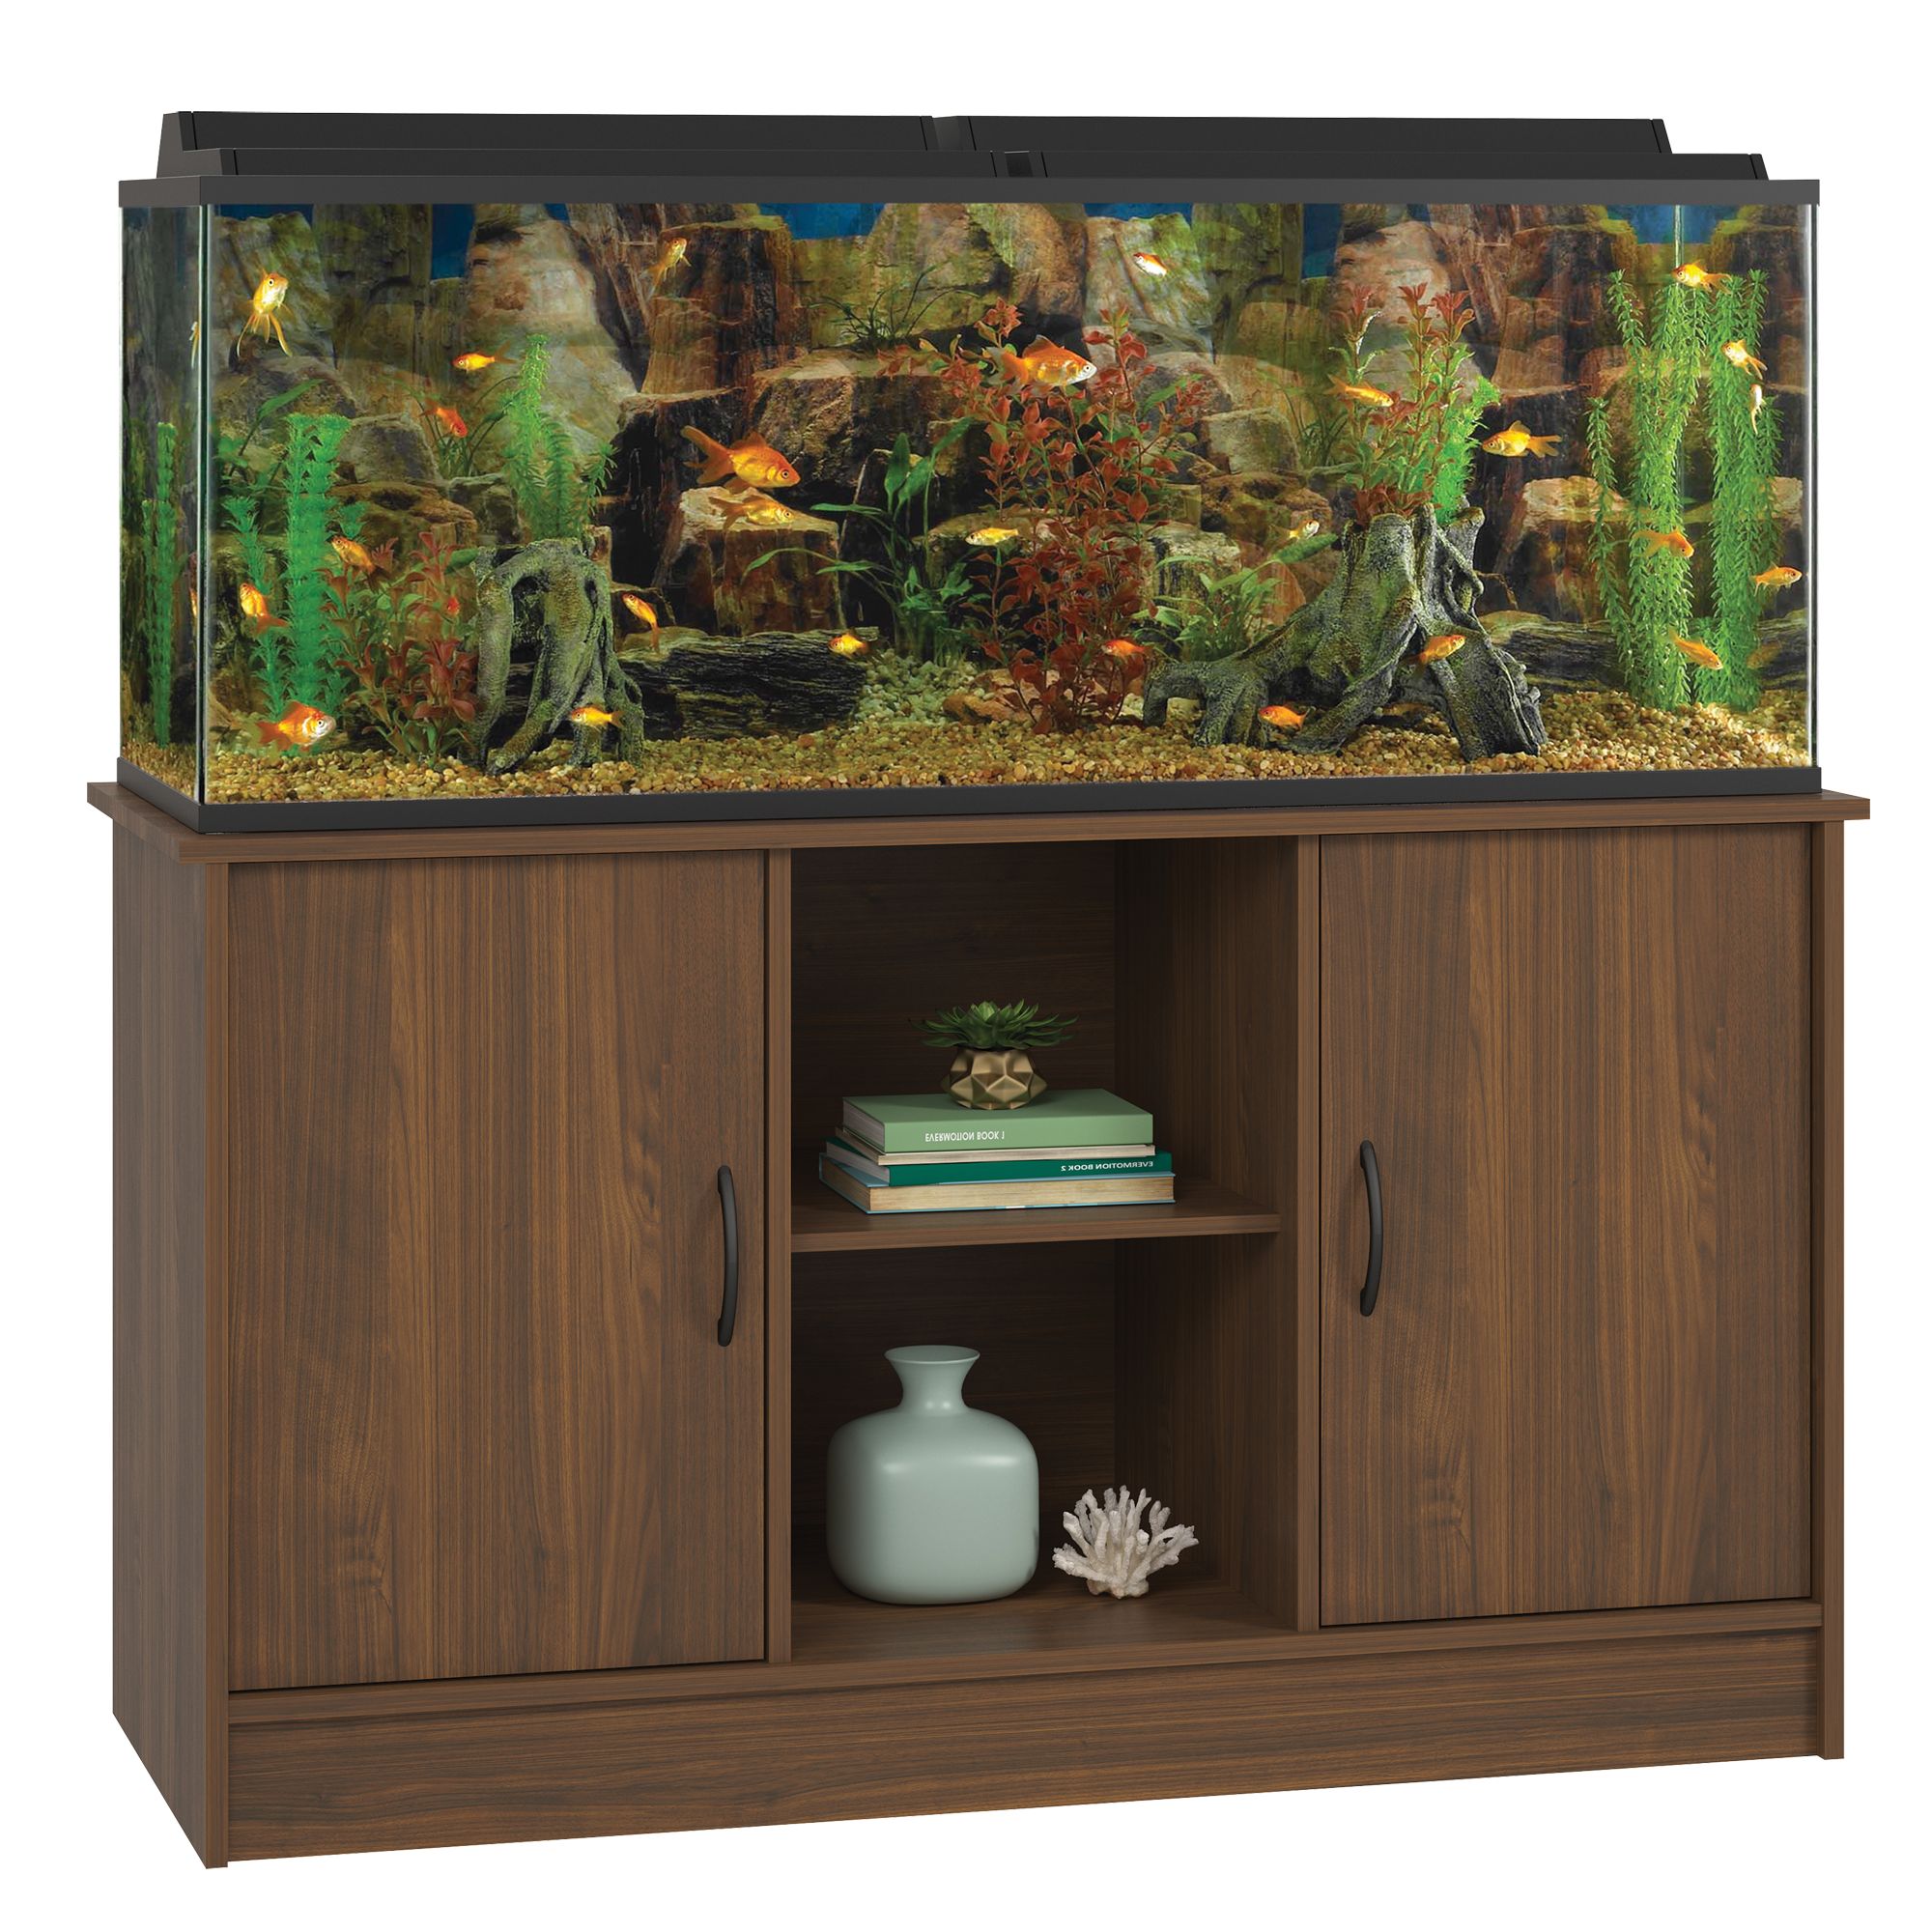 Top Fin® Aquarium Stand | fish Aquarium 